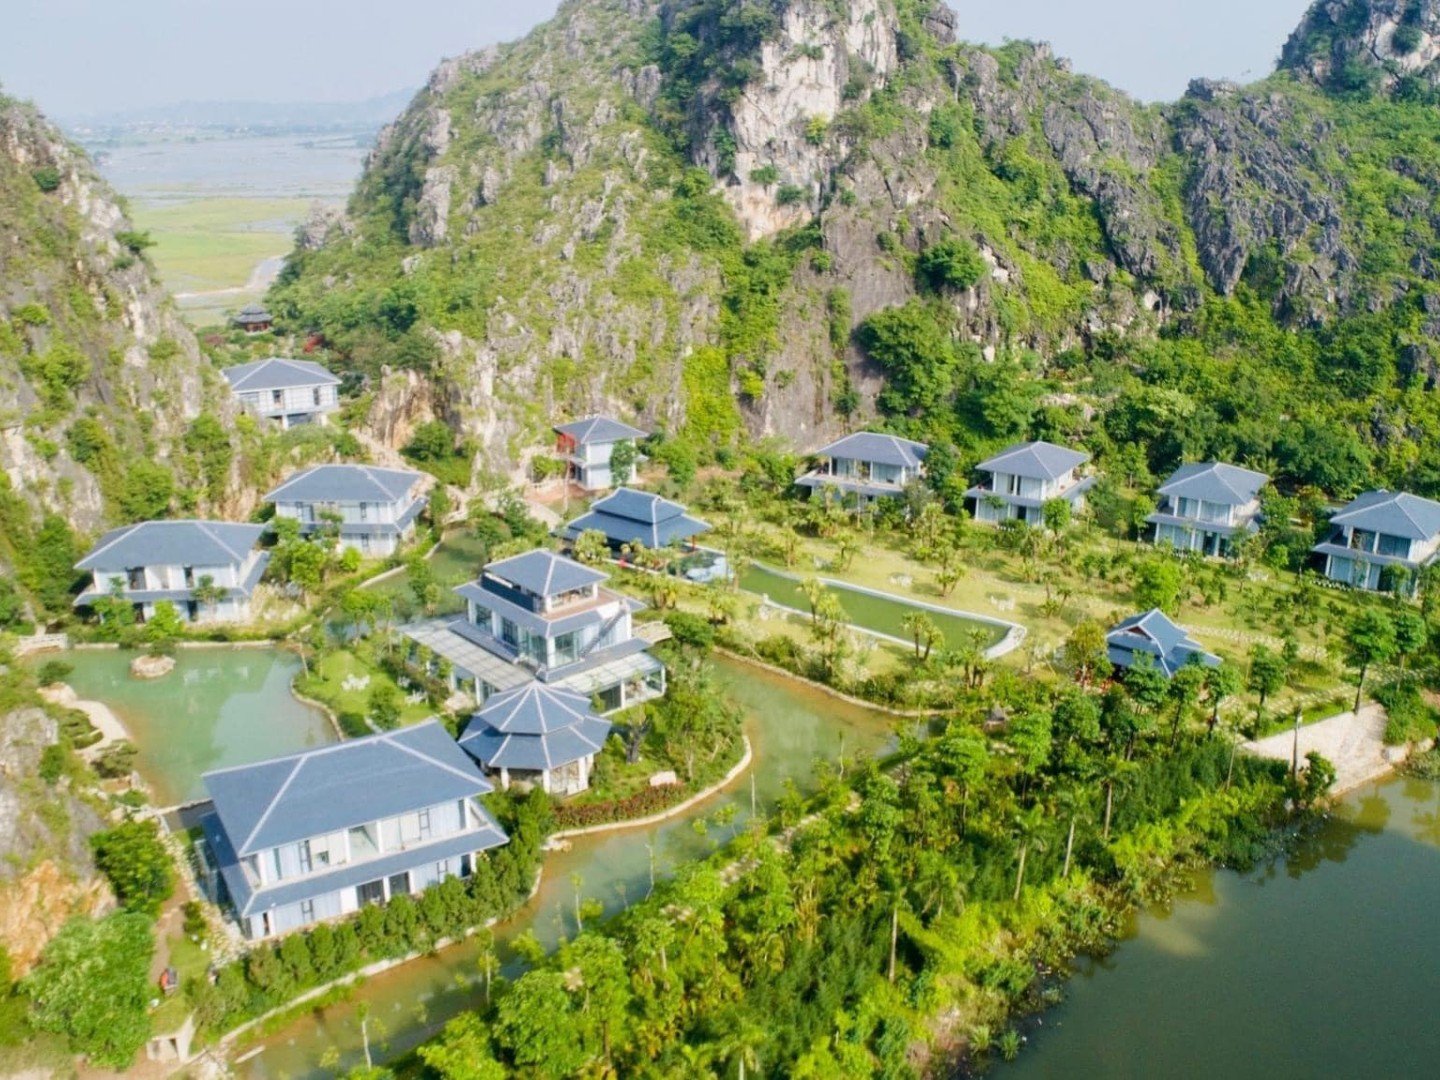 Minawa Kenh Ga Resort Spa Ninh Binh - Things To Do In Ninh Binh